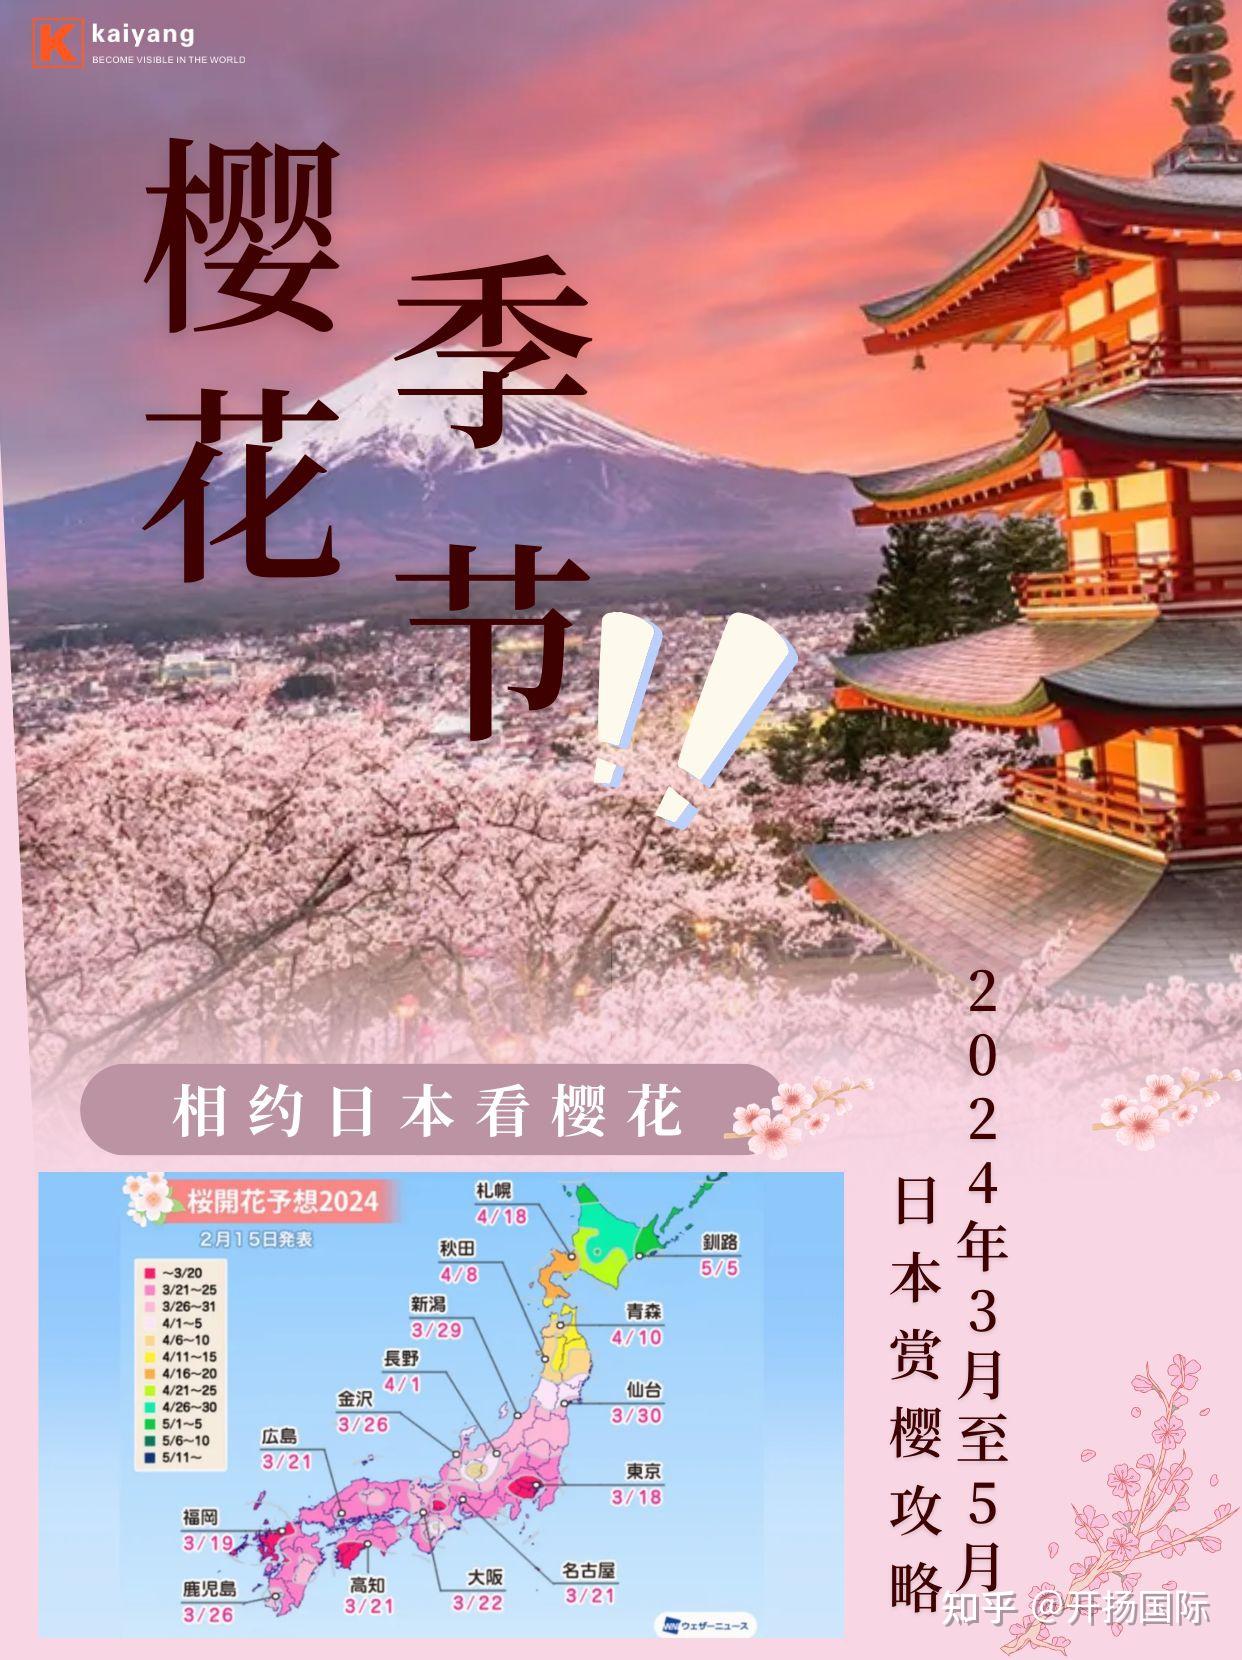 樱花是日本最著名的花卉,也是春天的使者 